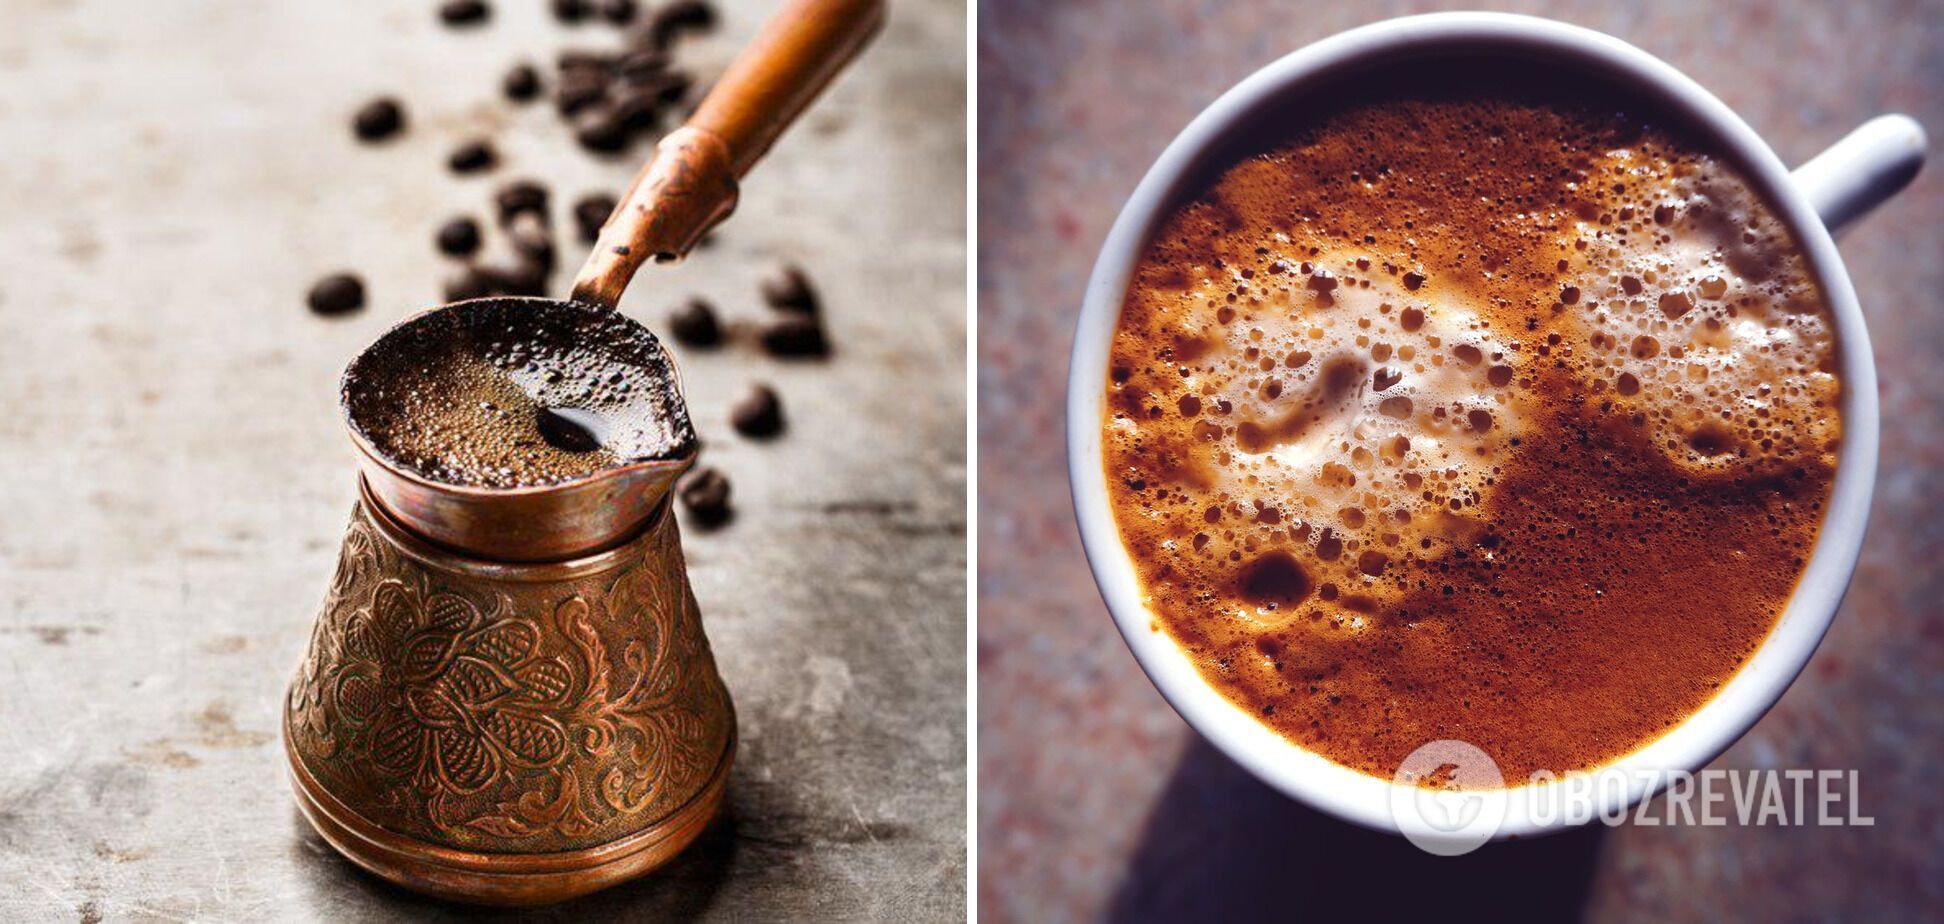 Coffee in a Turk